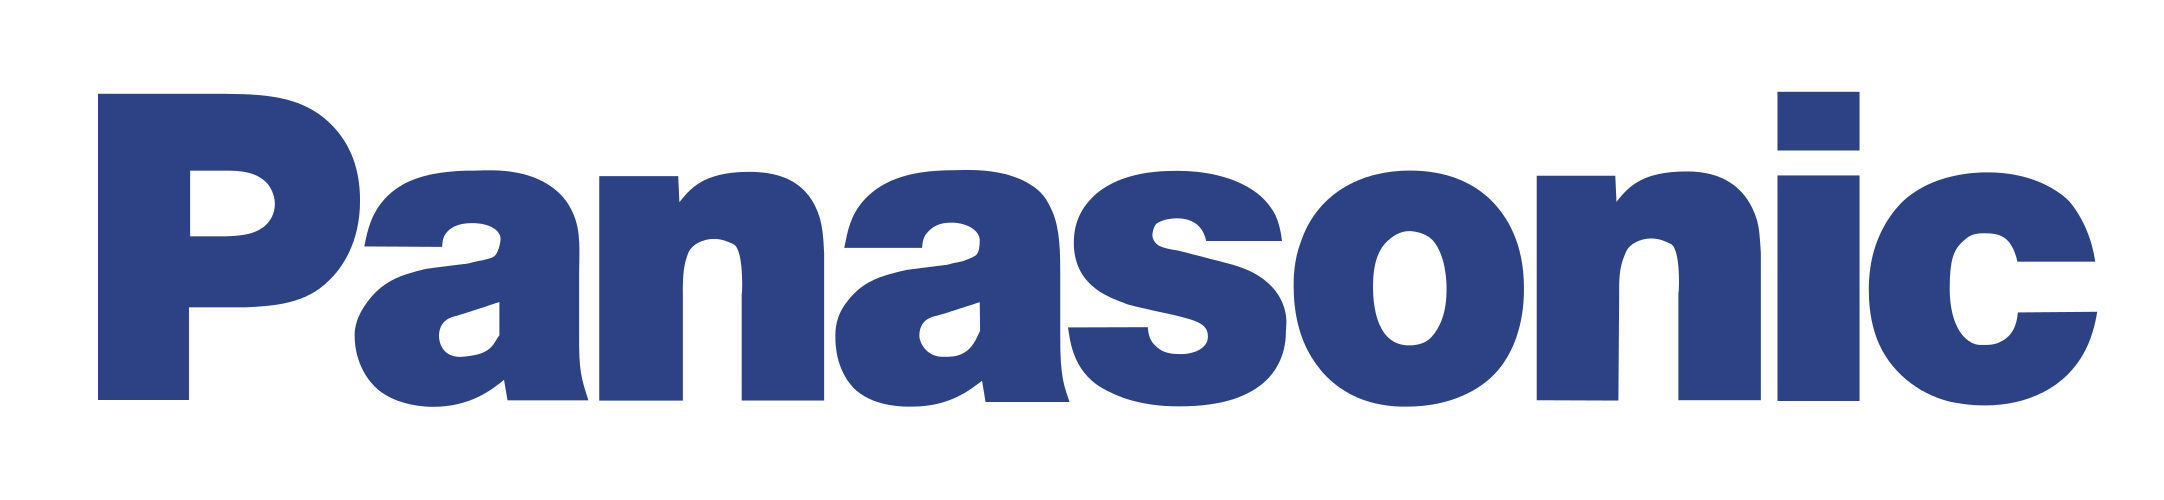 Panasonic company logo